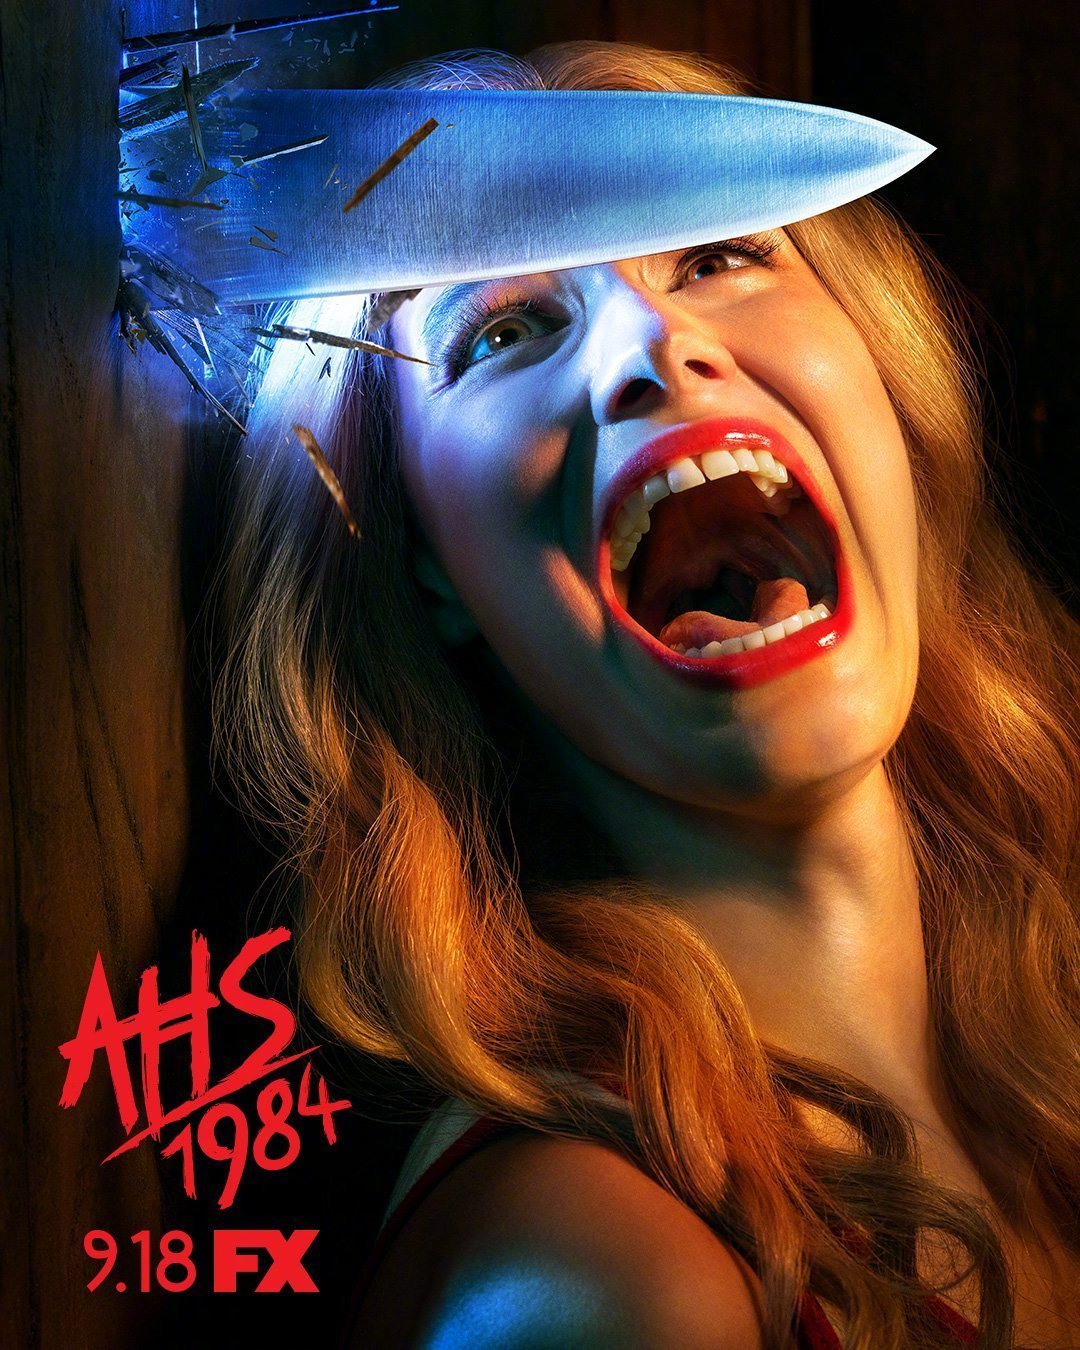 《美国恐怖故事:1984》发布新海报,剧集将于9月18日开播 zt